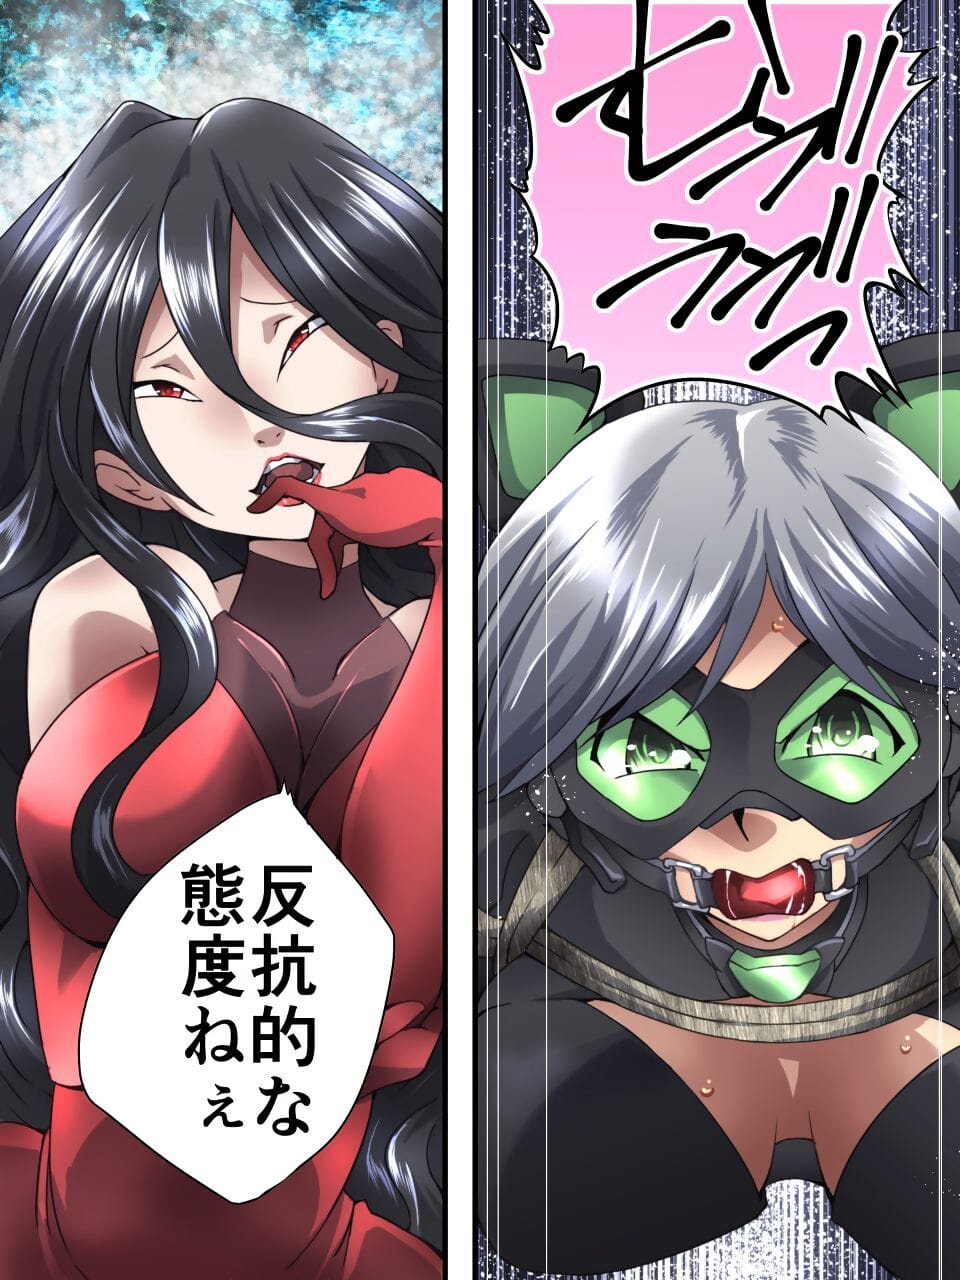 Kaitou Silver Cat Manga Ban Dai 3-wa page 1